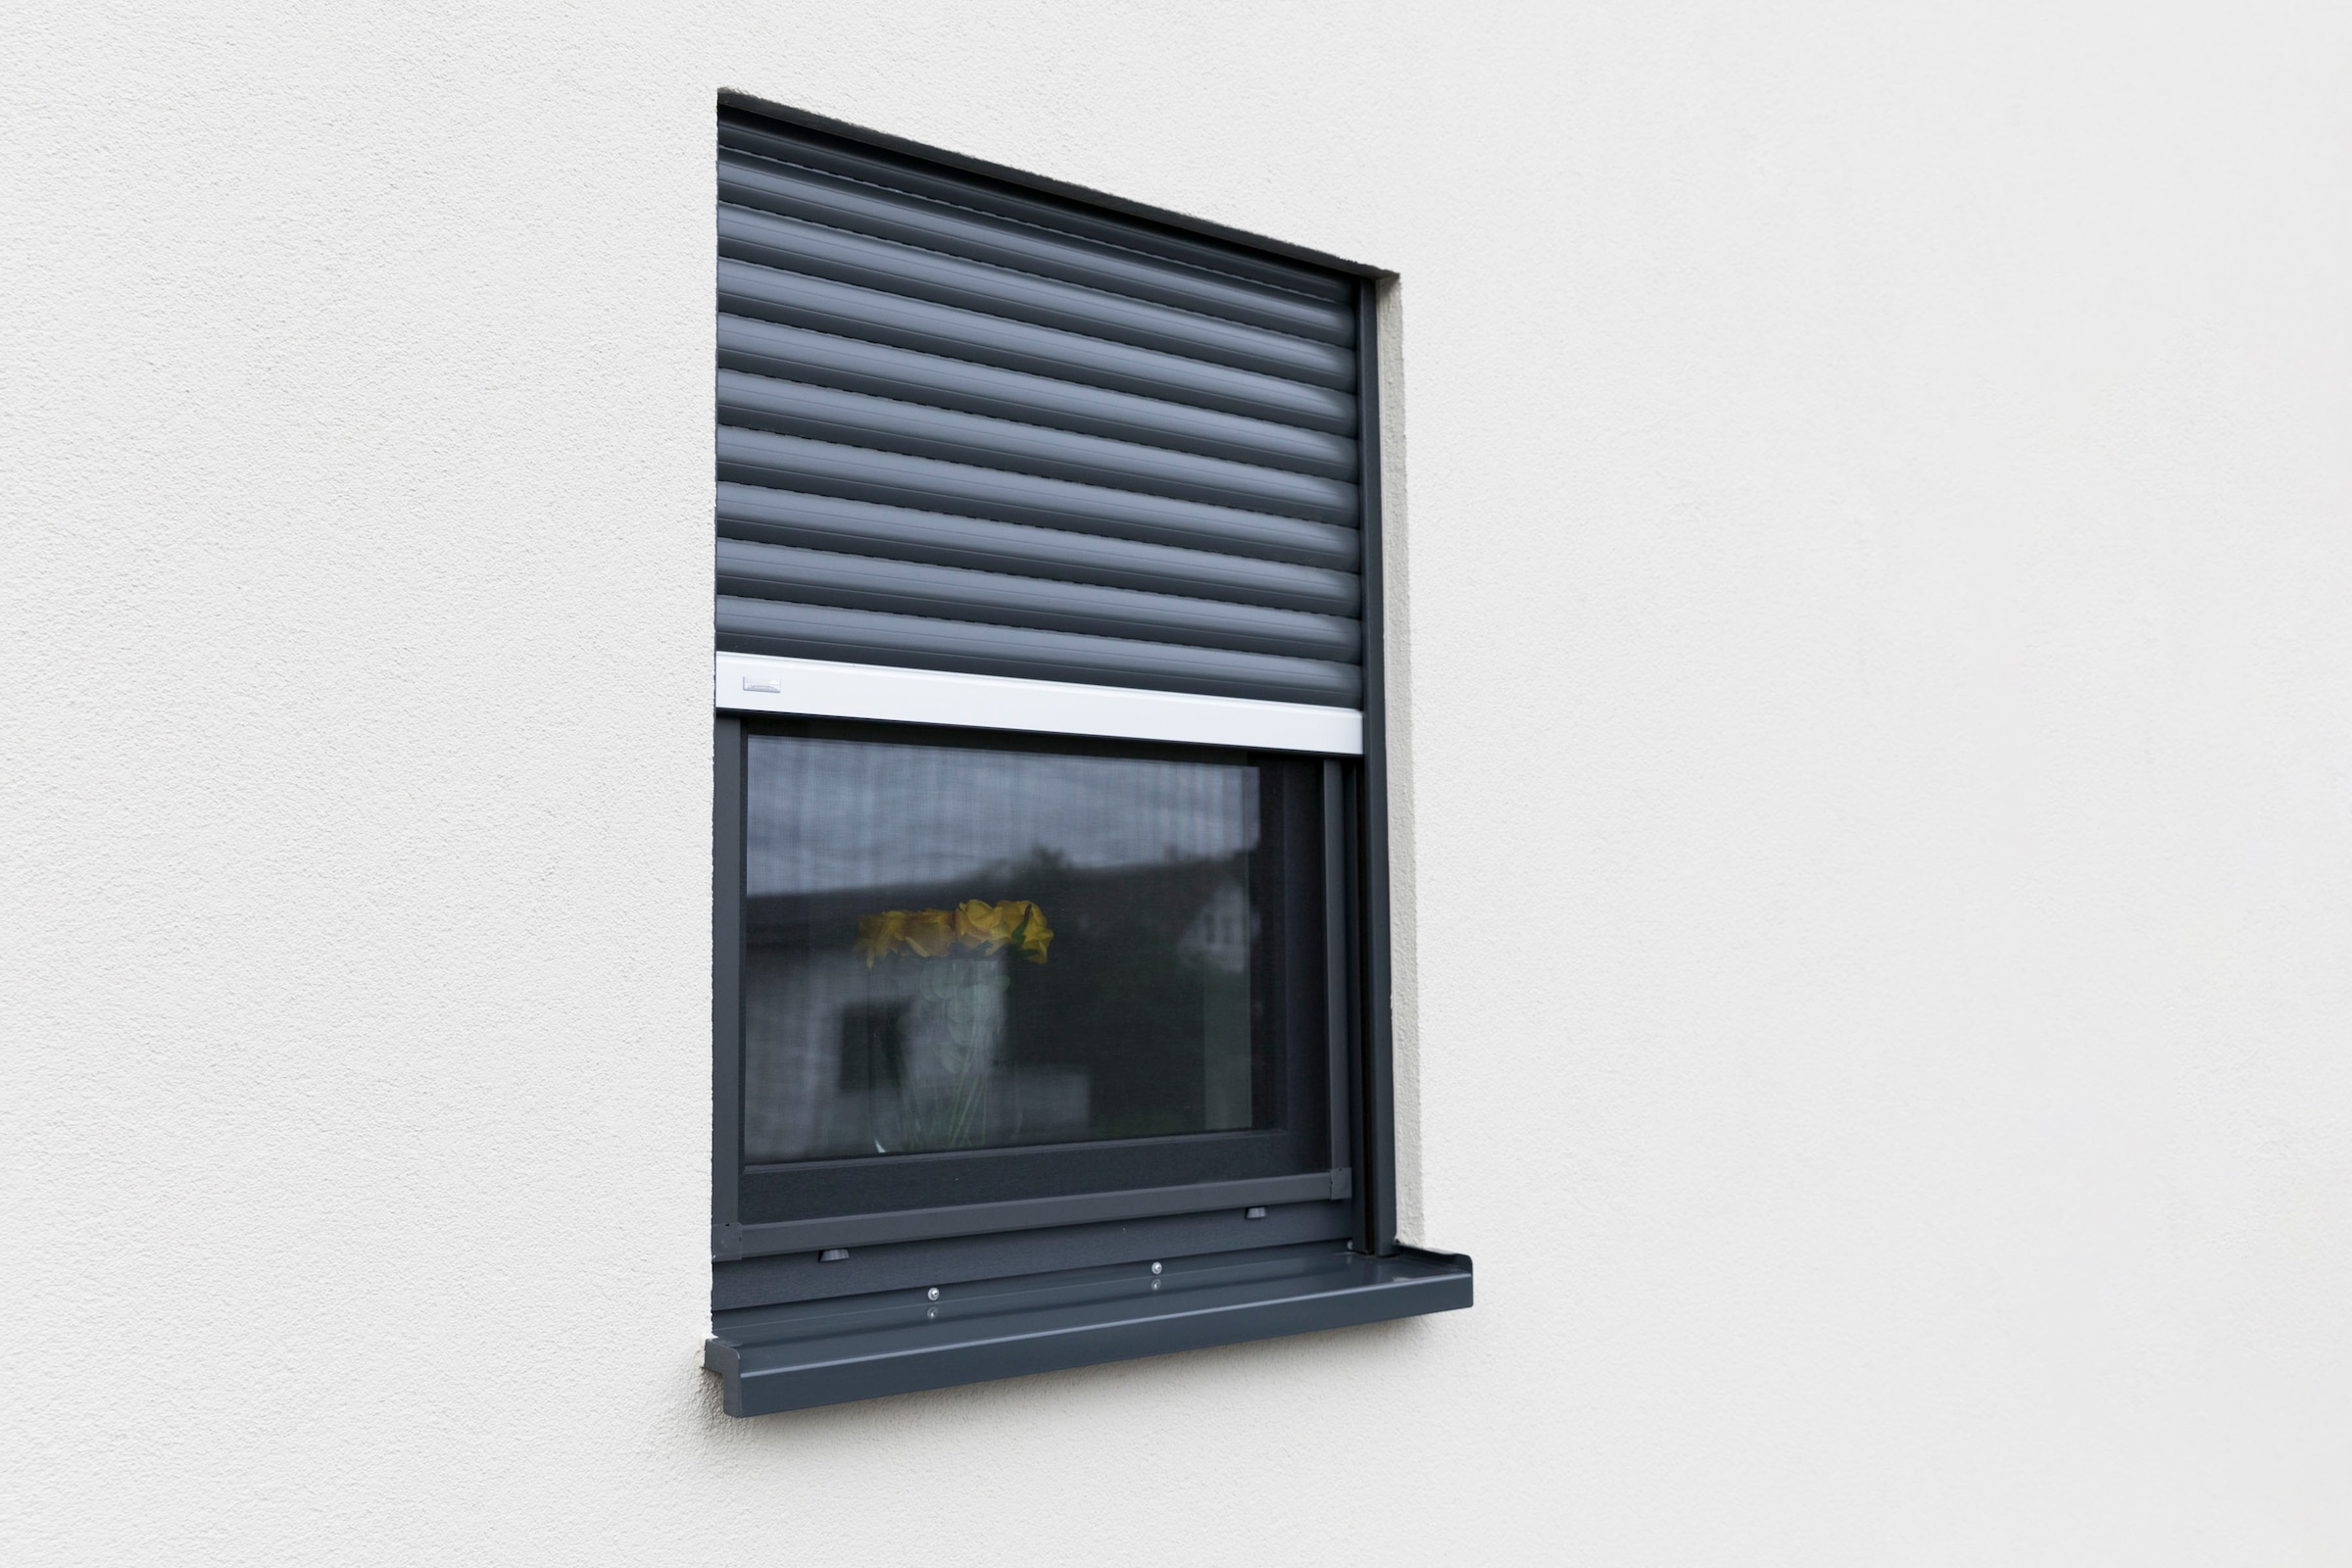 SCHELLENBERG Insektenschutz-Fensterrahmen »Fliegengitter Fenster Premium«, mit Rahmen aus Aluminium, 100 x 120 cm, anthrazit, 70041